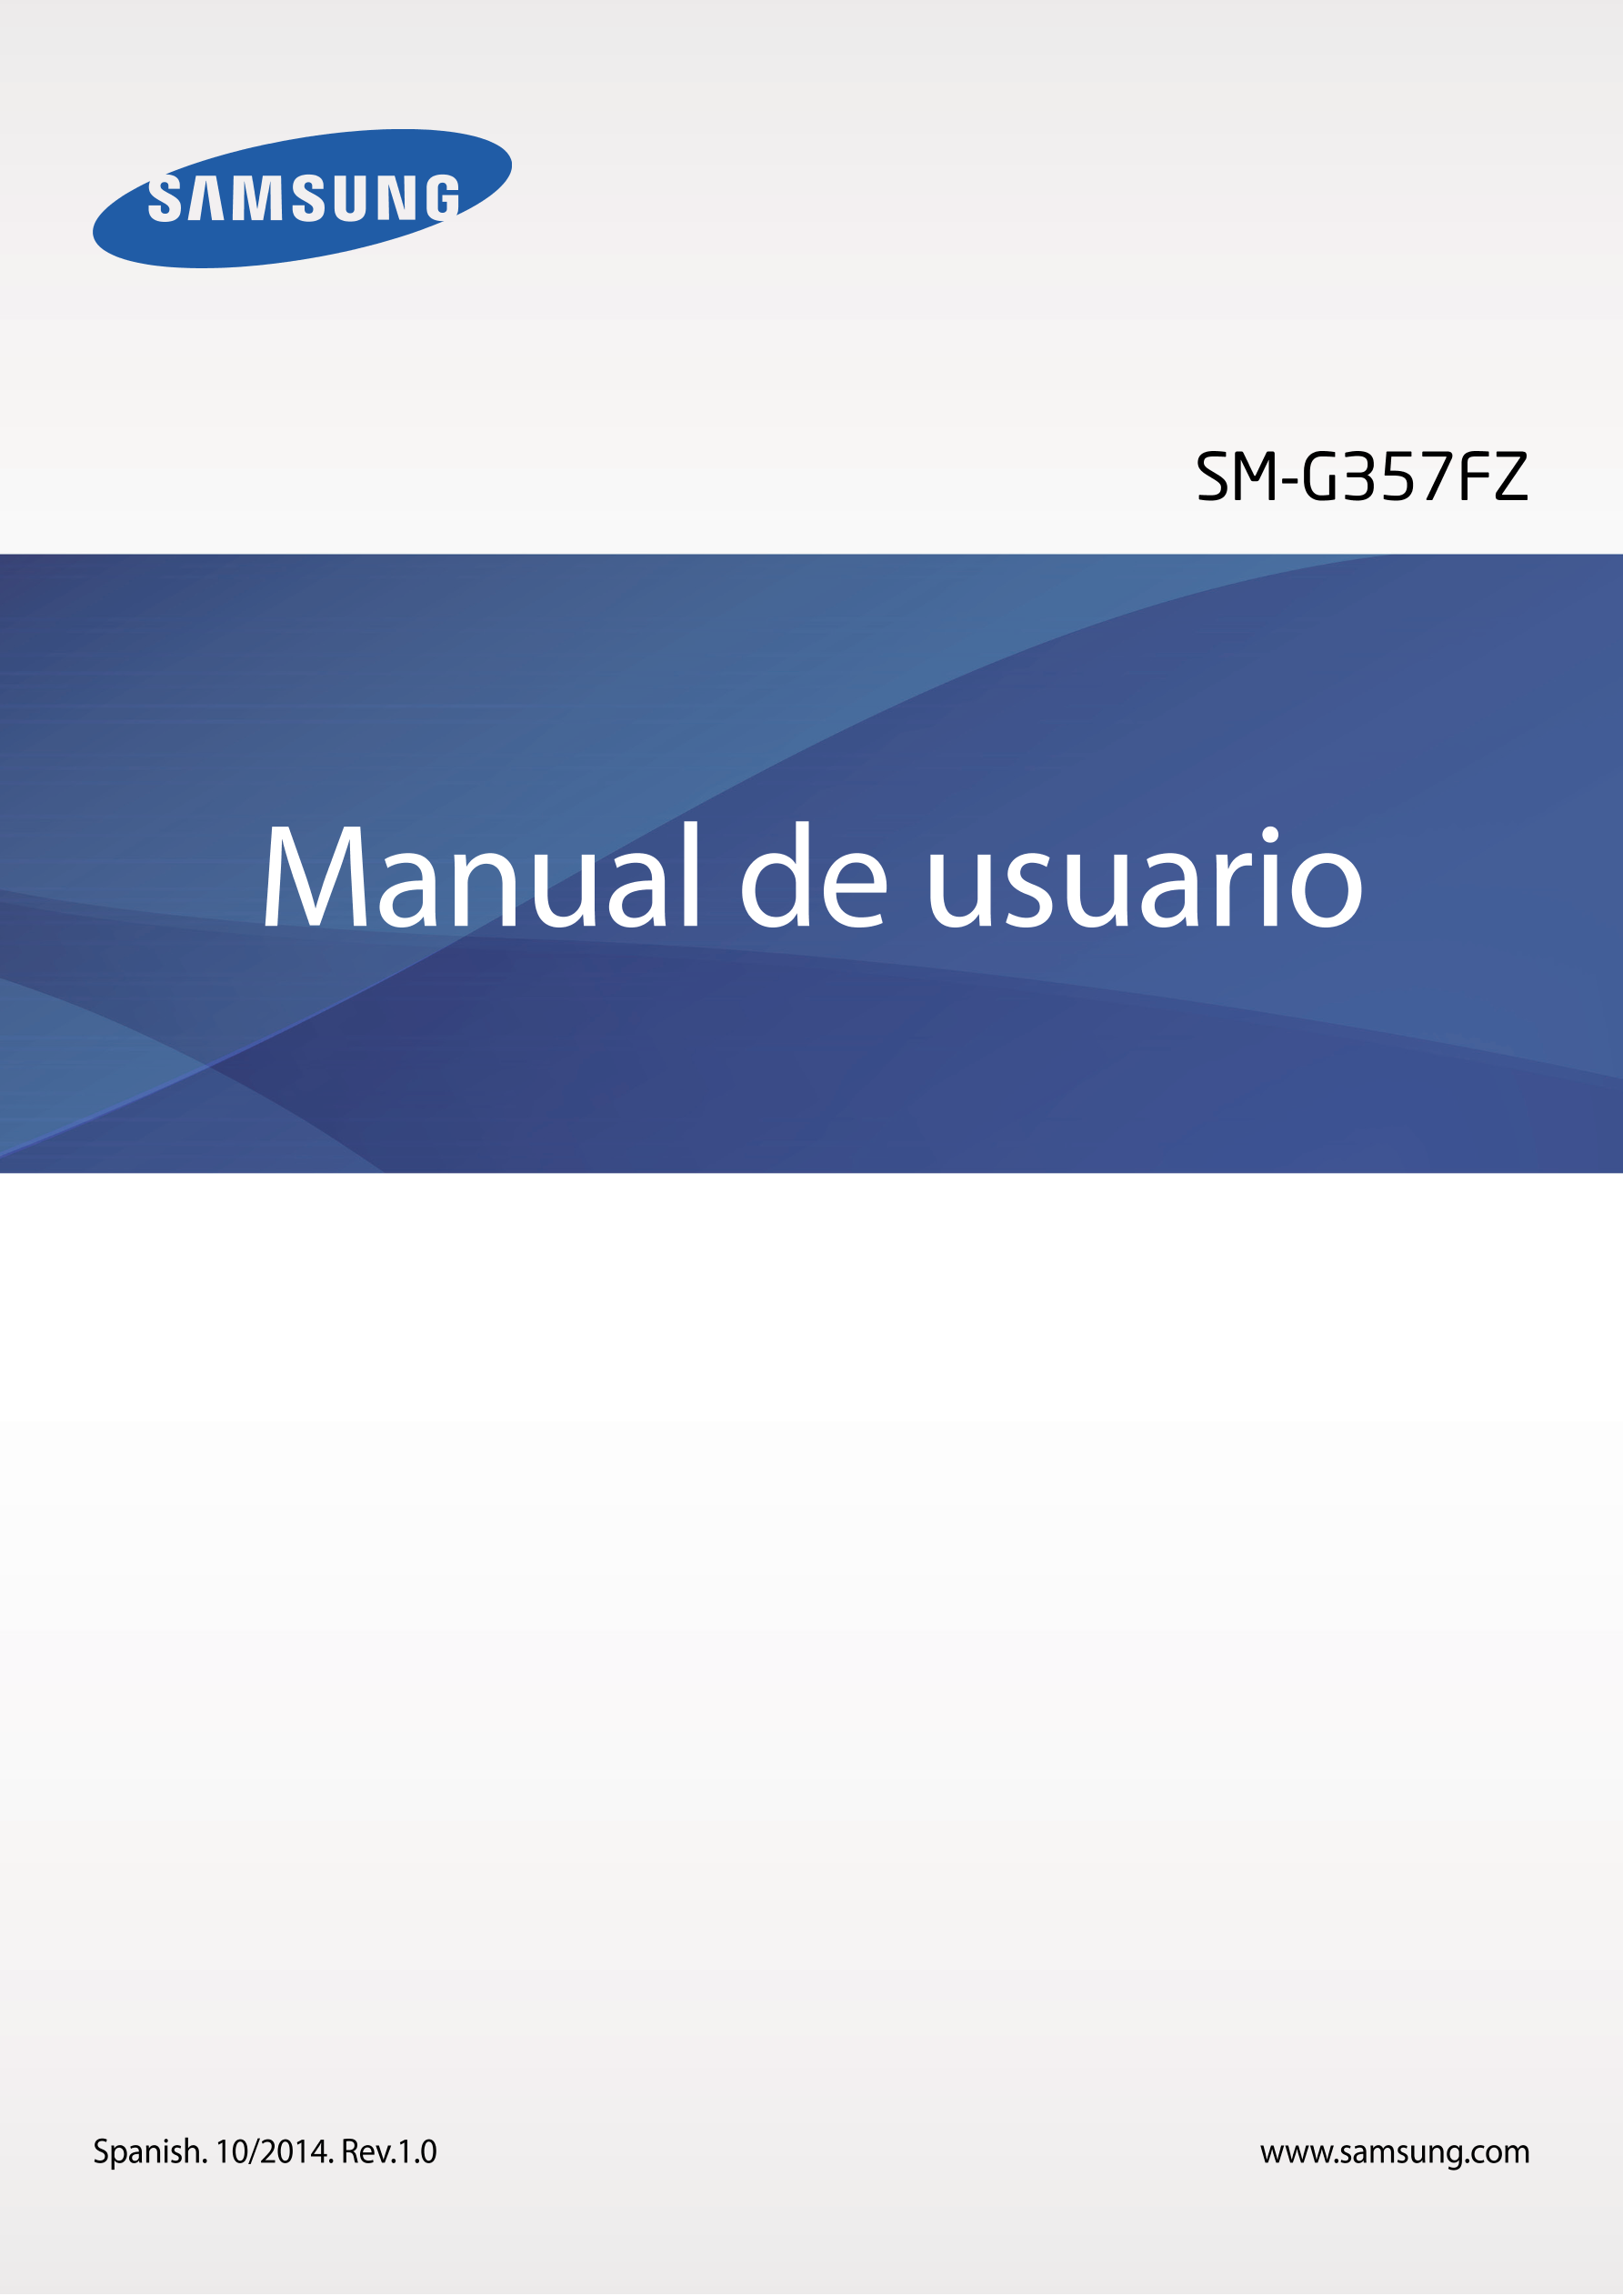 SM-G357FZ
Manual de usuario
Spanish. 10/2014. Rev.1.0 www.samsung.com